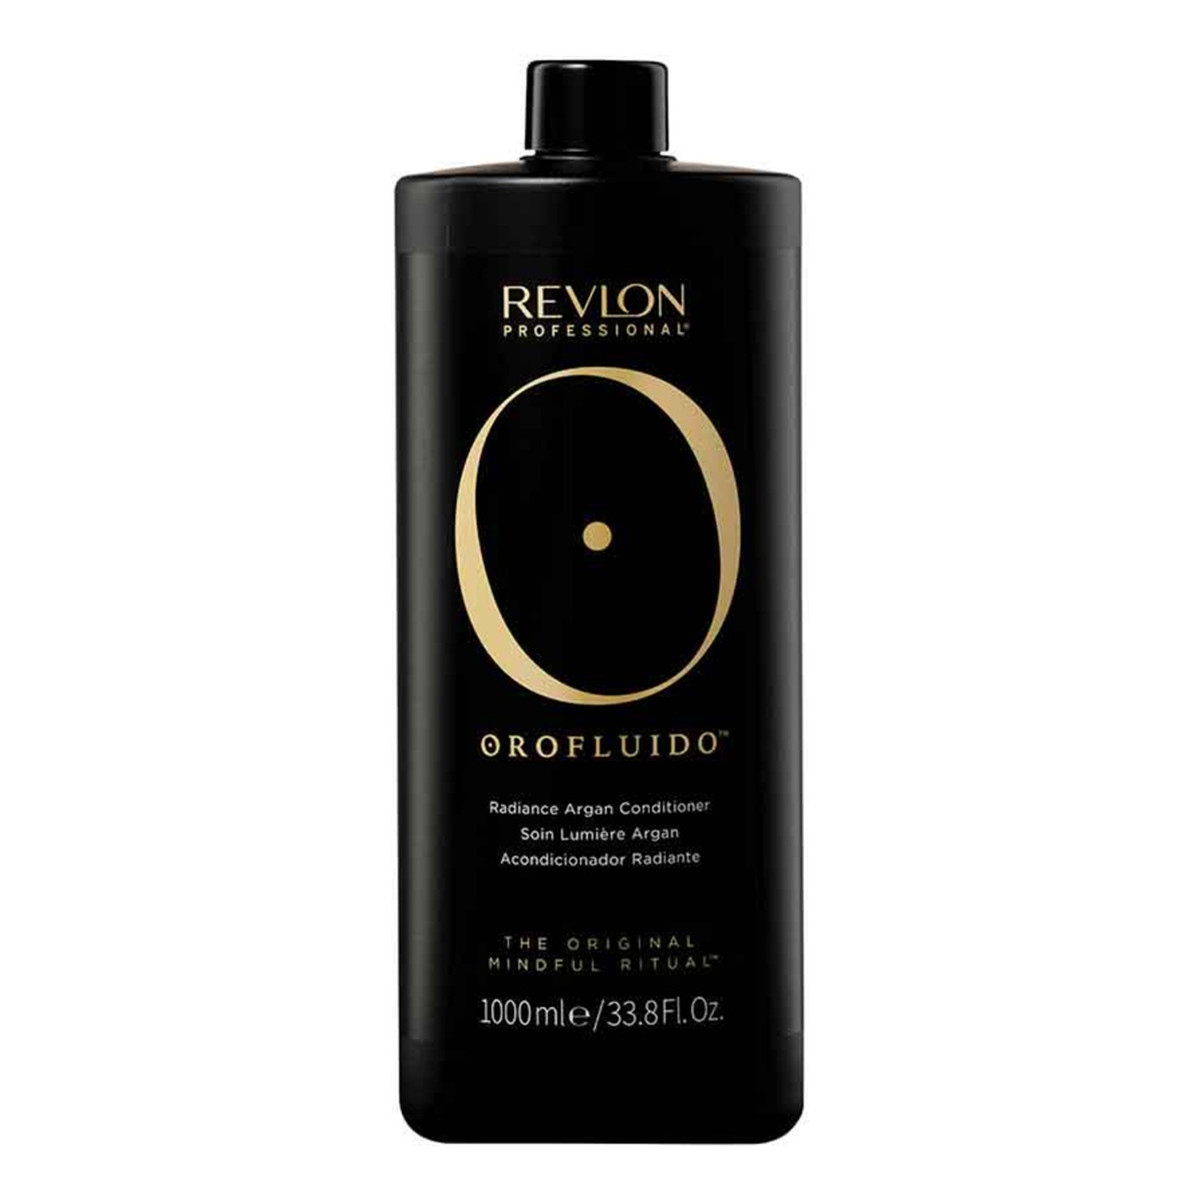 Revlon Professional Orofluido Radiance Argan Conditioner nawilżająca odżywka do włosów 1000ml